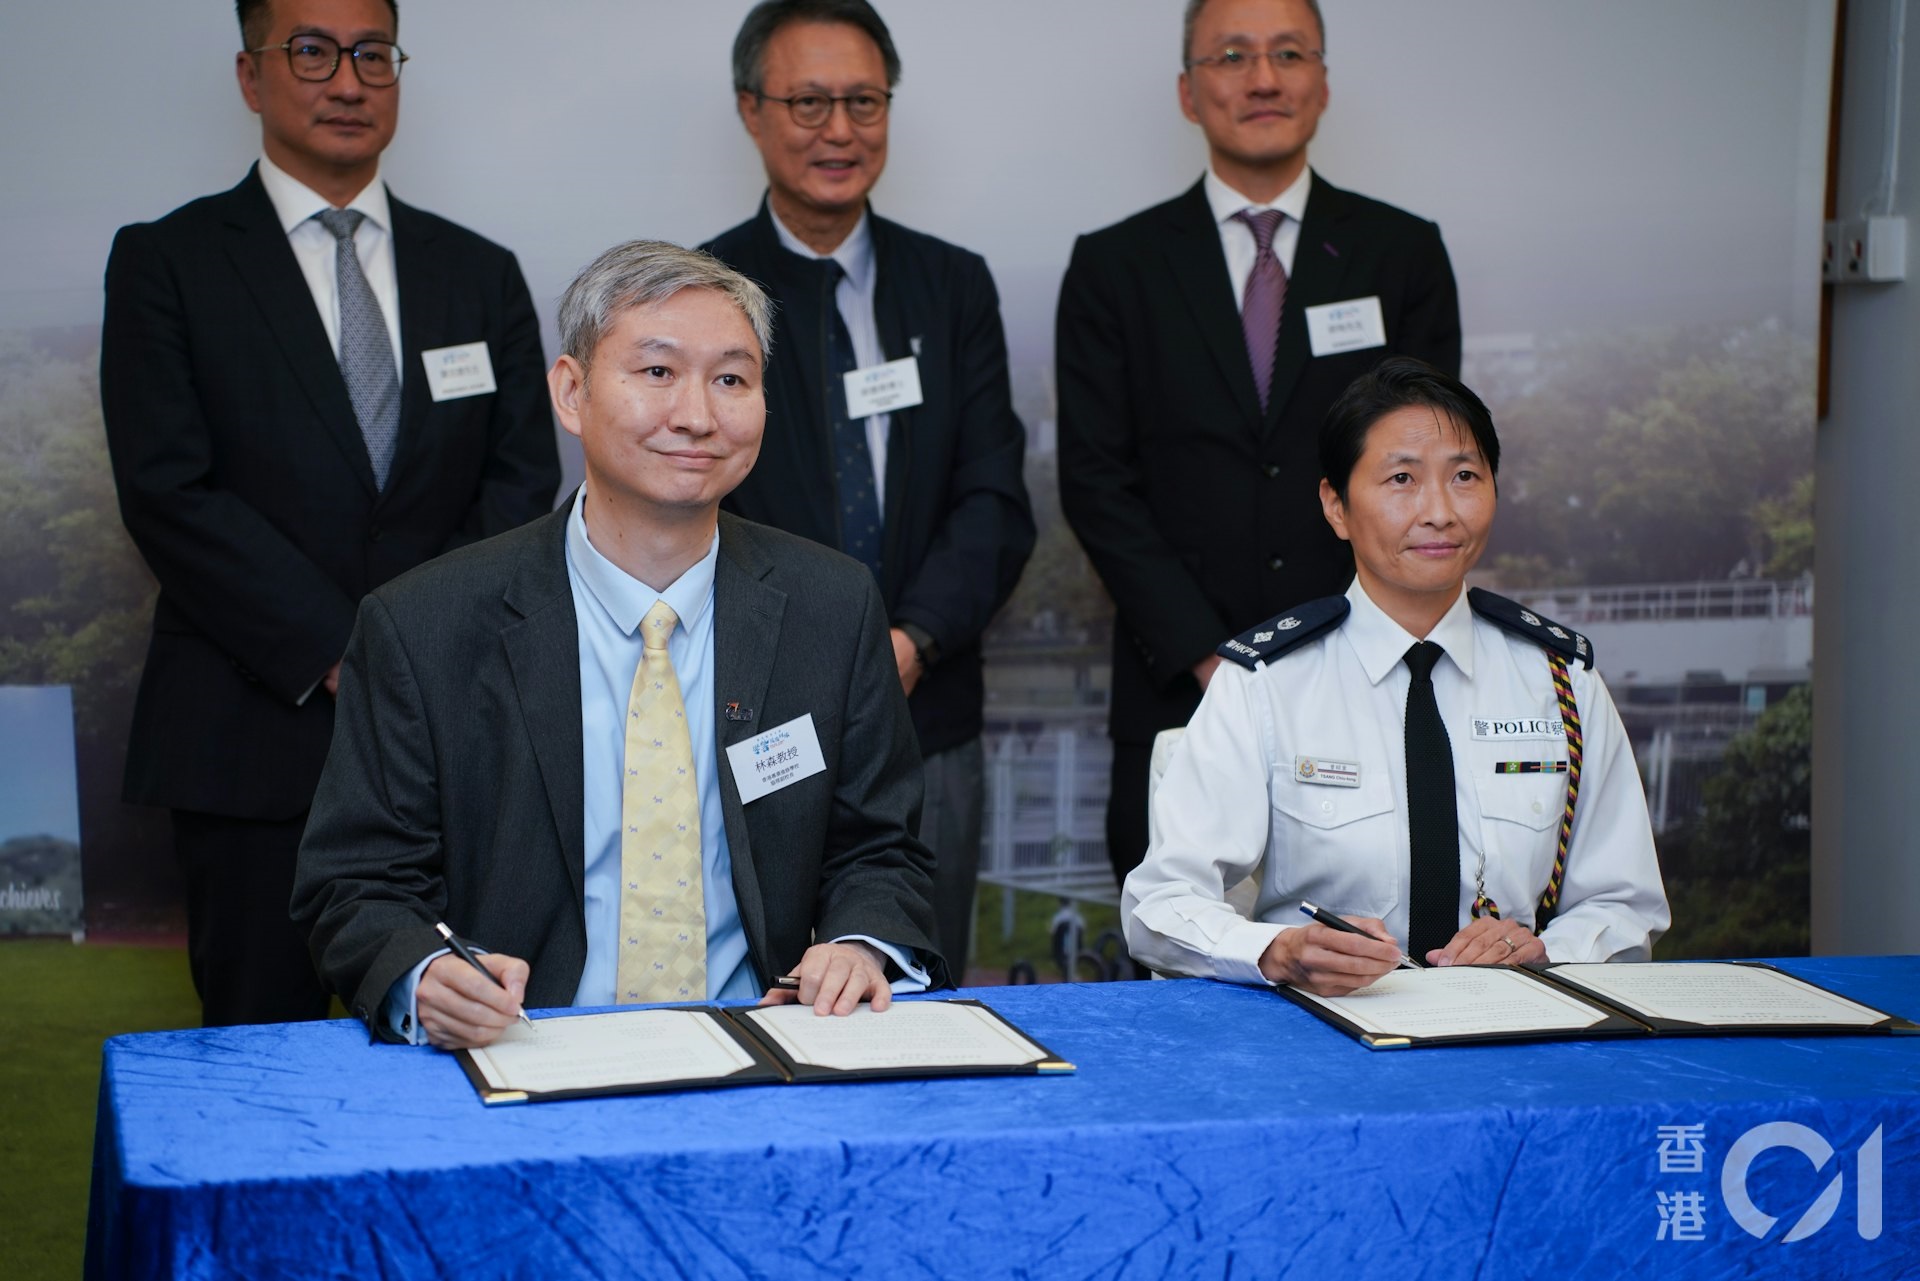 警察學院與香港專業進修學校合辦文憑課程　成功修畢一年　可即入學堂受訓 